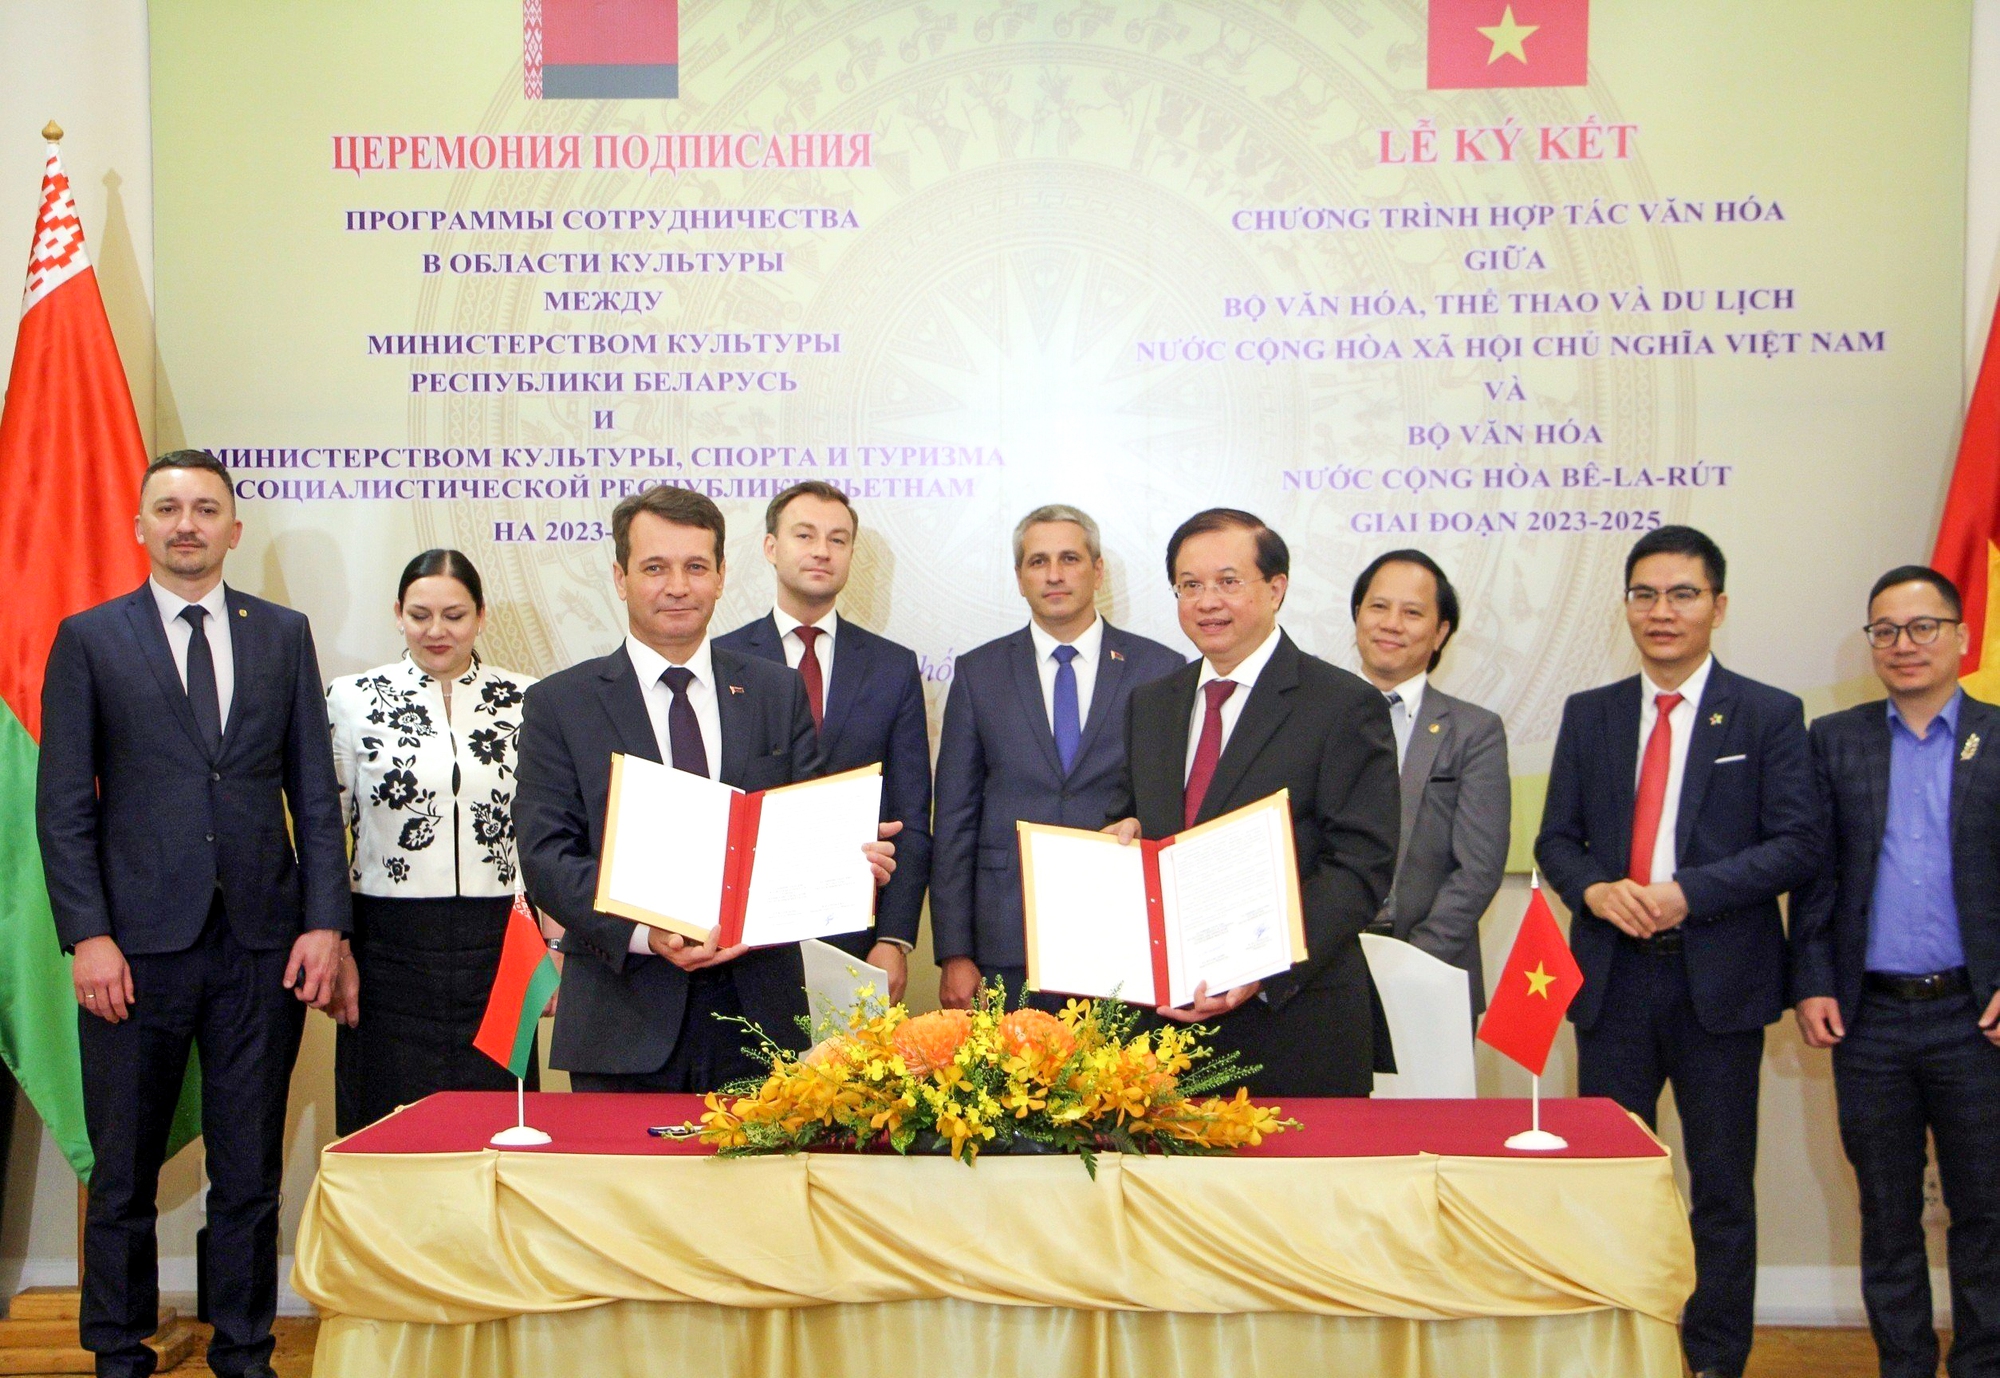 Việt Nam và Belarus ký Chương trình hợp tác văn hóa giai đoạn 2023-2025 - Ảnh 2.